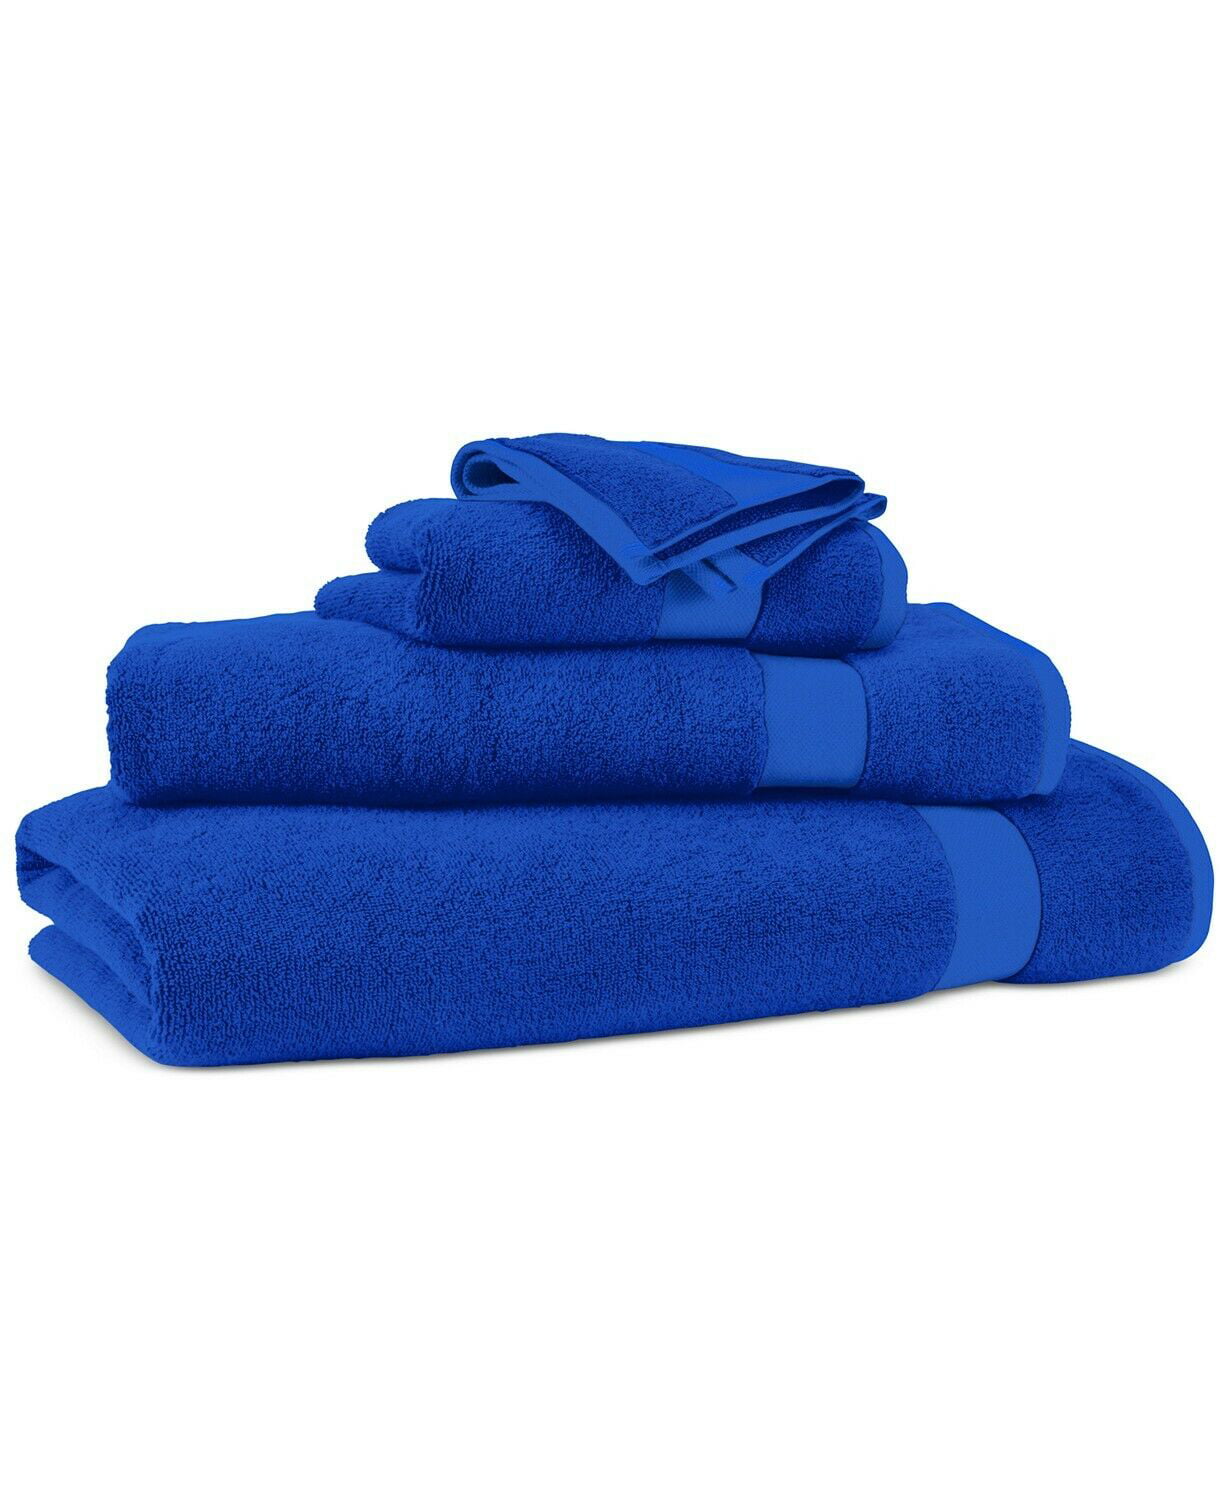 Lauren Ralph Lauren Wescott 100% Cotton 30 x 16 Hand Towel - Admiral Blue  